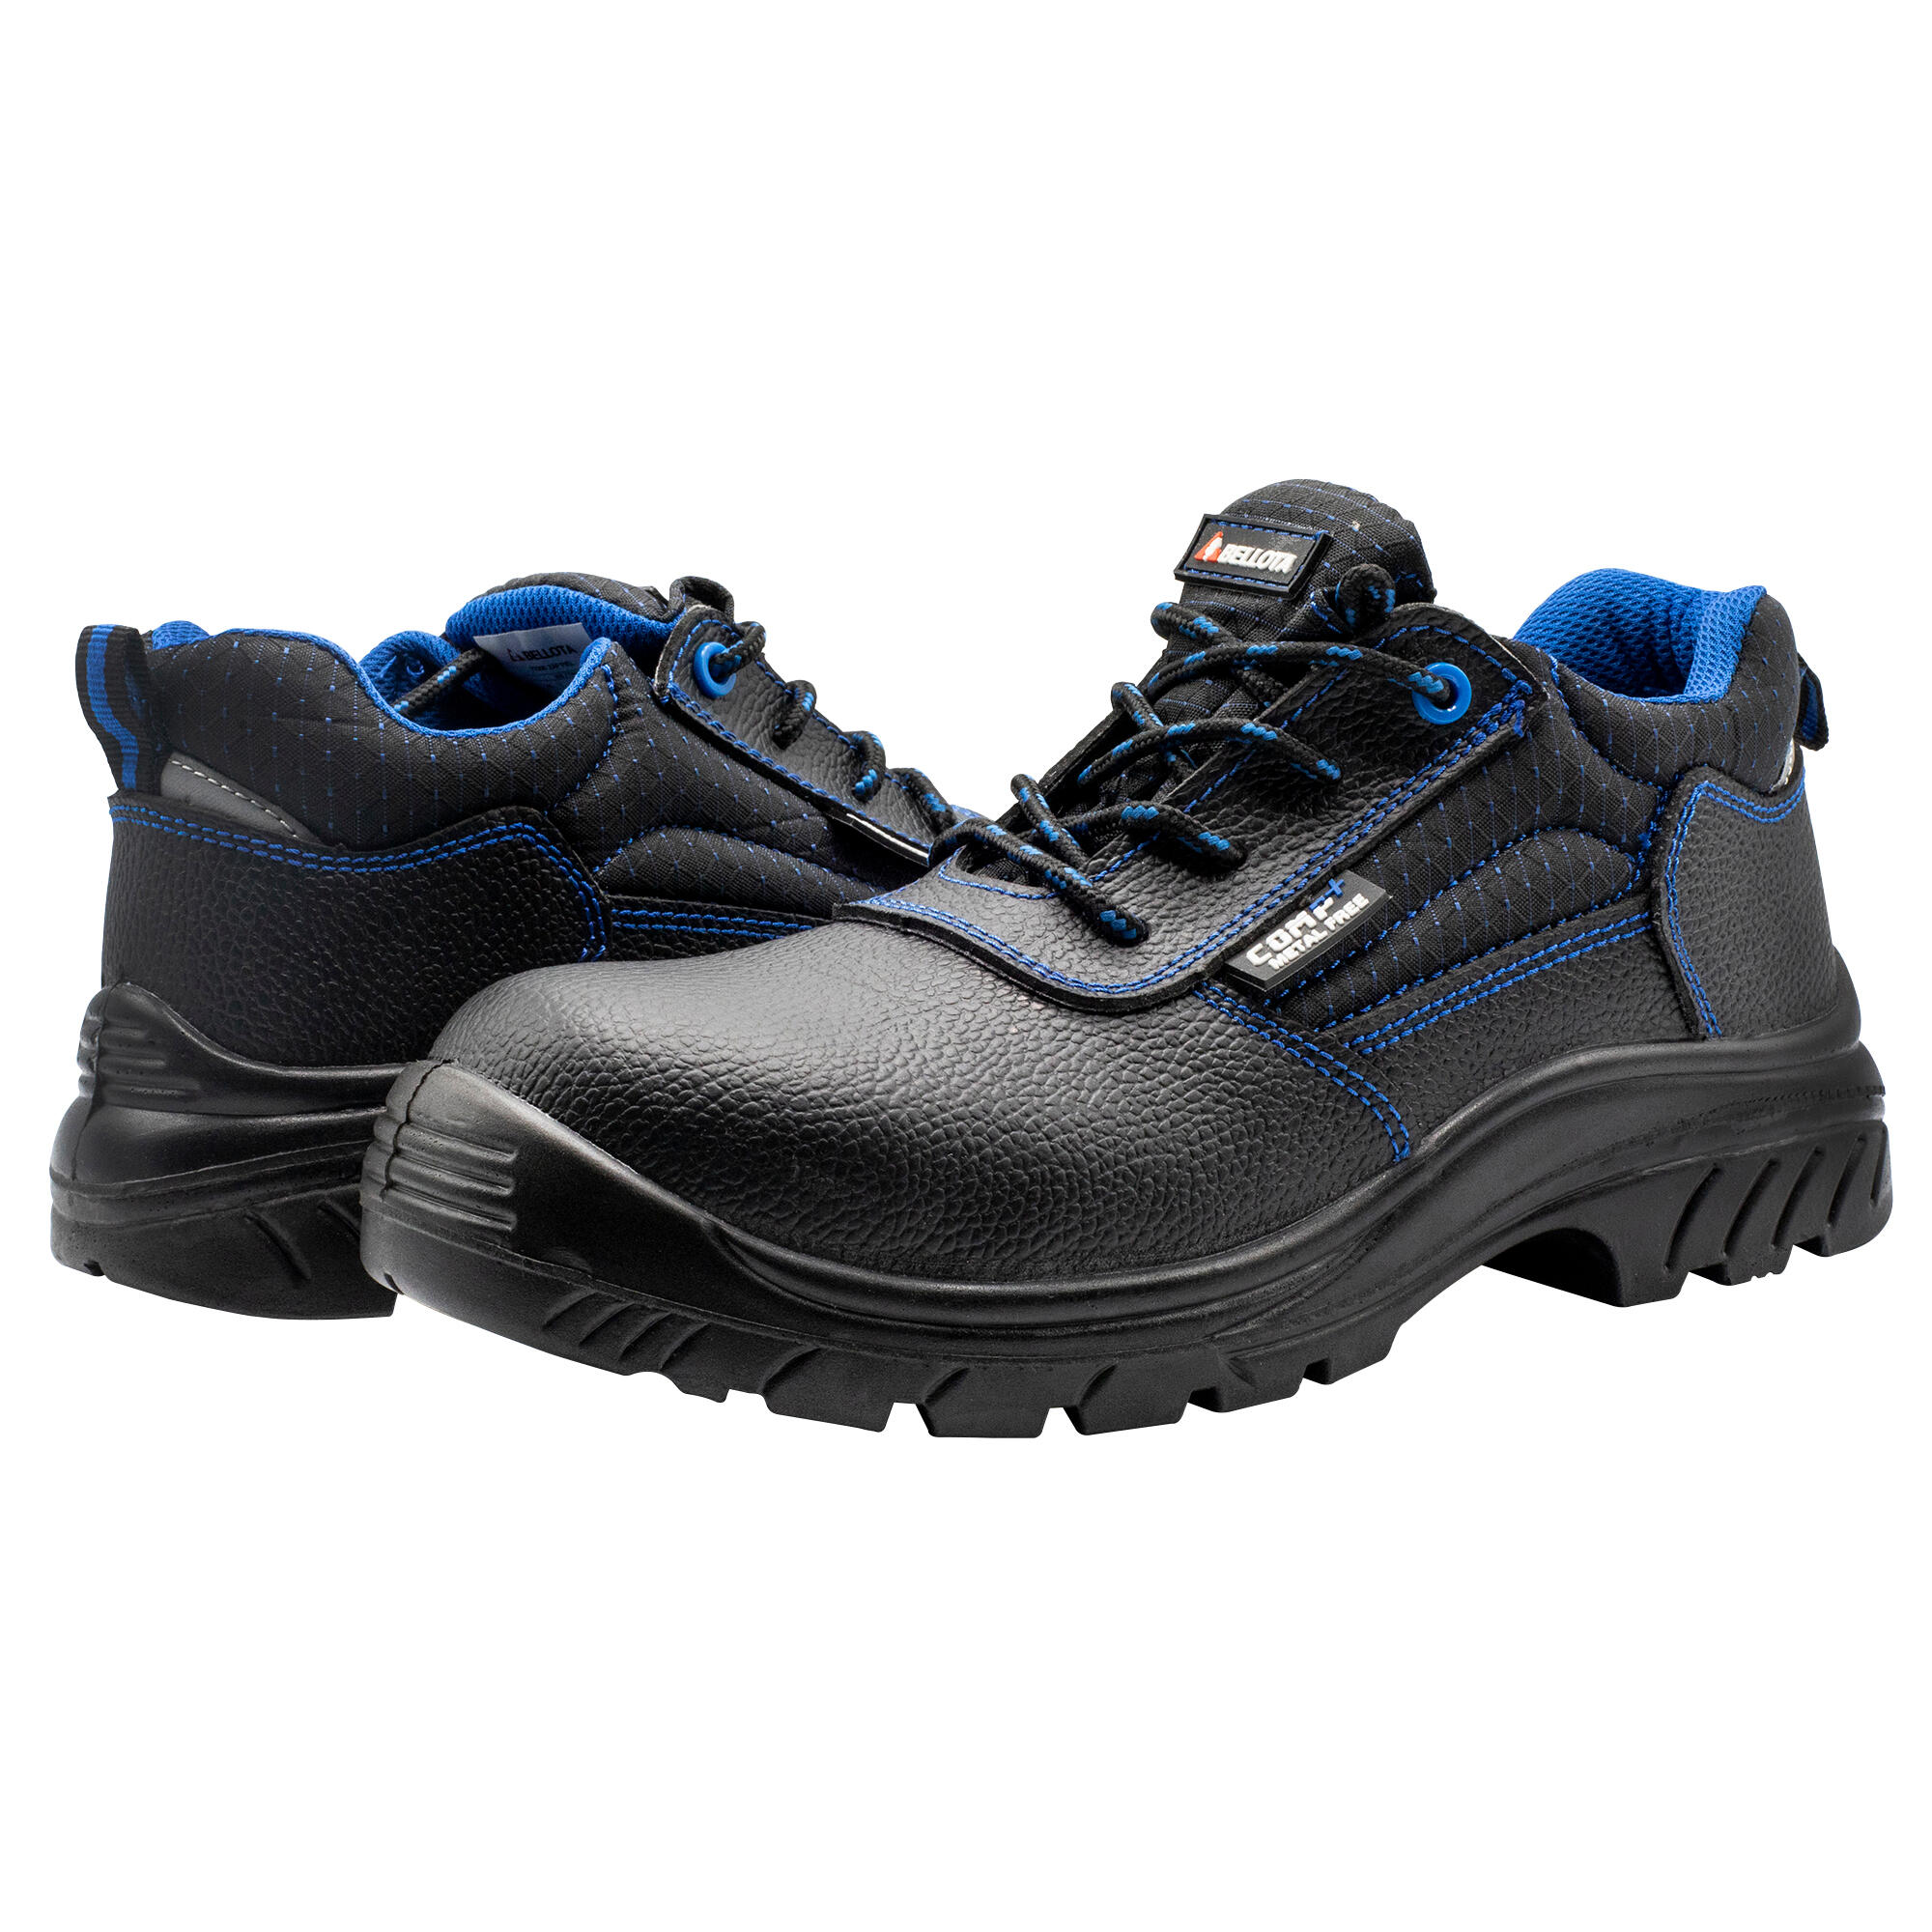 Zapato s3 bellota comp+ para trabajos en exterior t42 negro